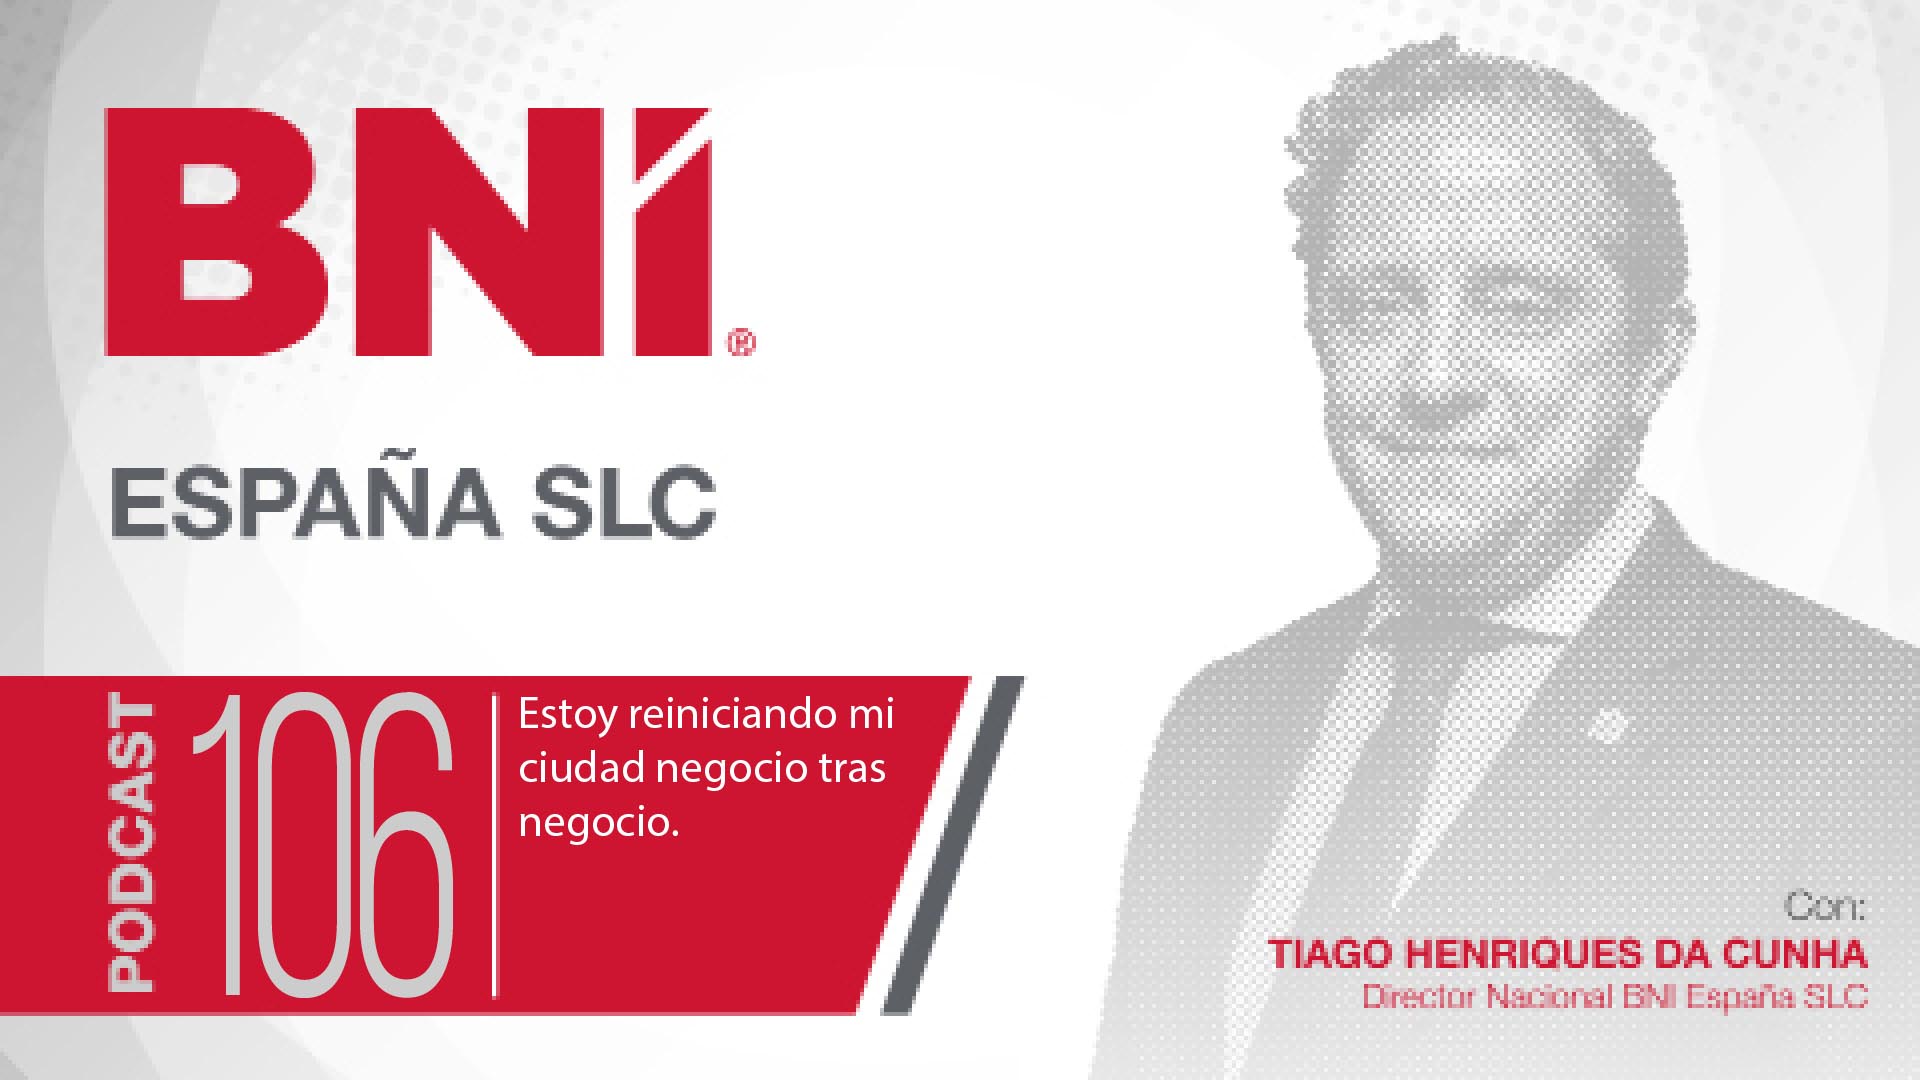 Tiago Henriques Da Cunha Director Nacional BNI España